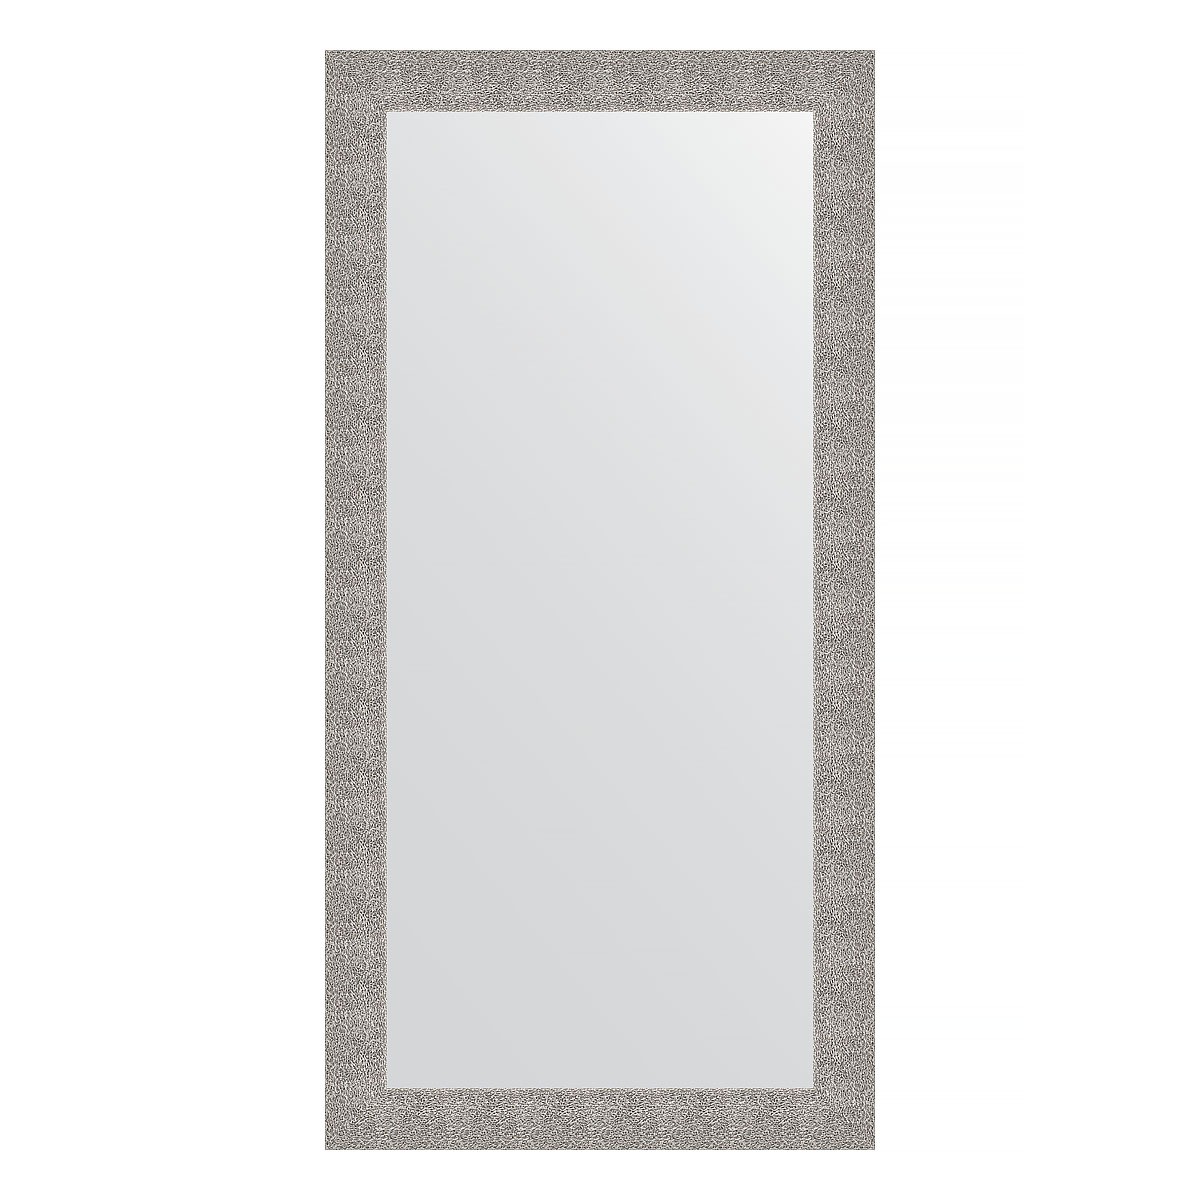 Зеркало в багетной раме Evoform чеканка серебряная 90 мм 80х160 см